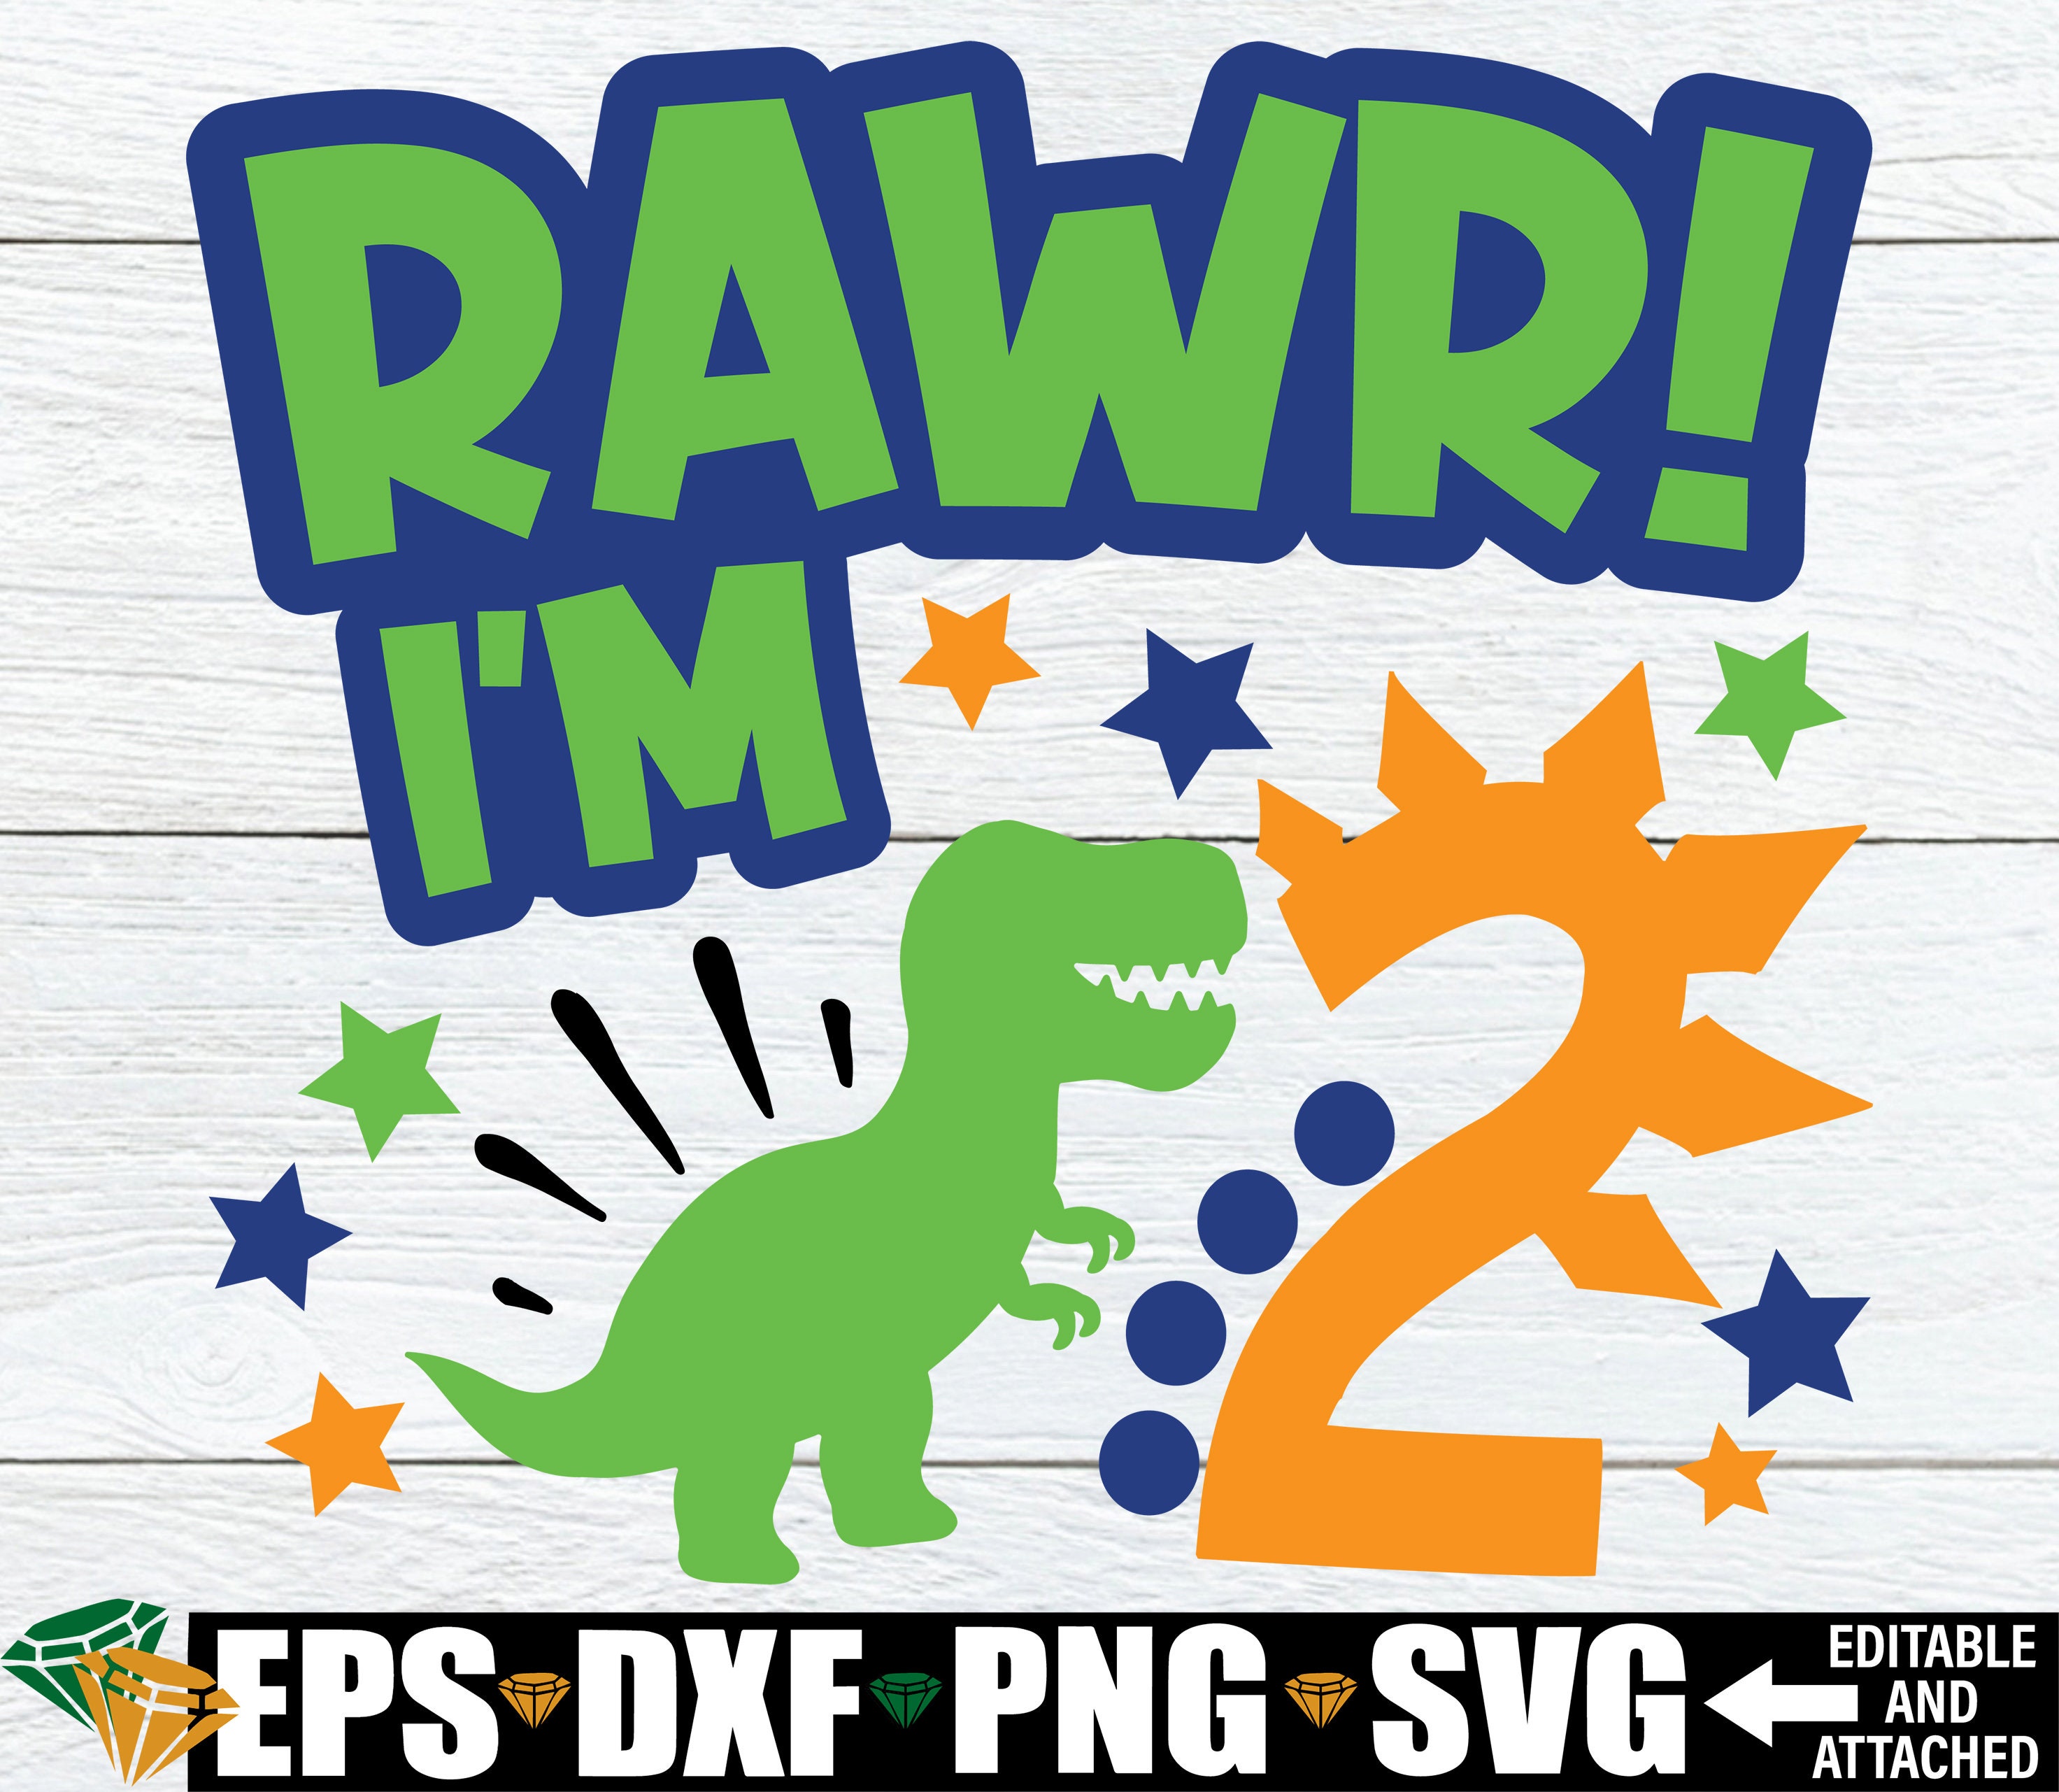 Roar significa que te quiero archivos SVG DXF png jpeg. -  España